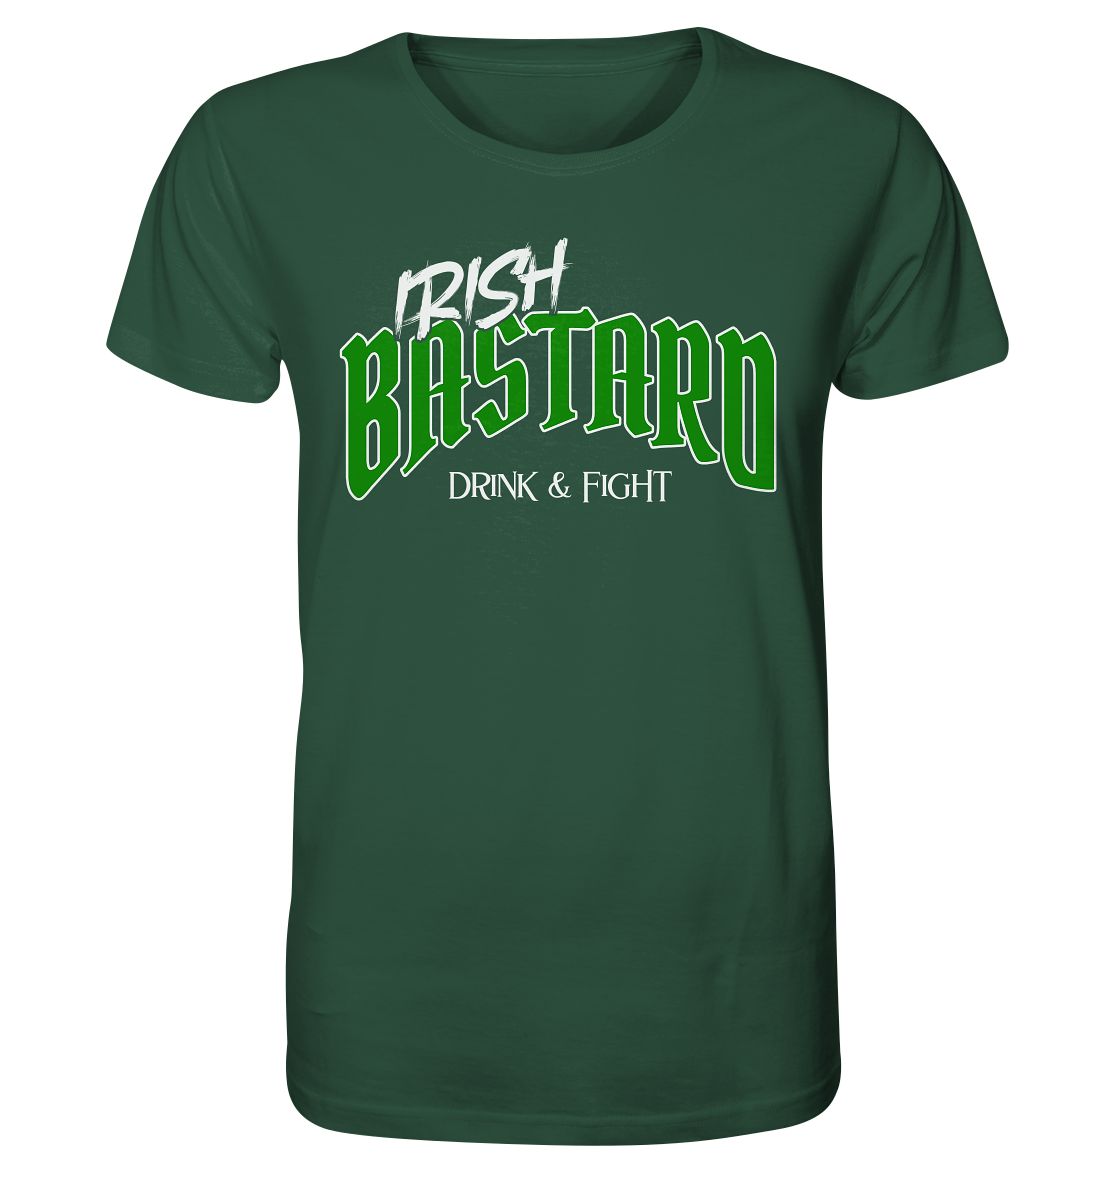 Irish Bastard "Drink & Fight" - Organic Shirt